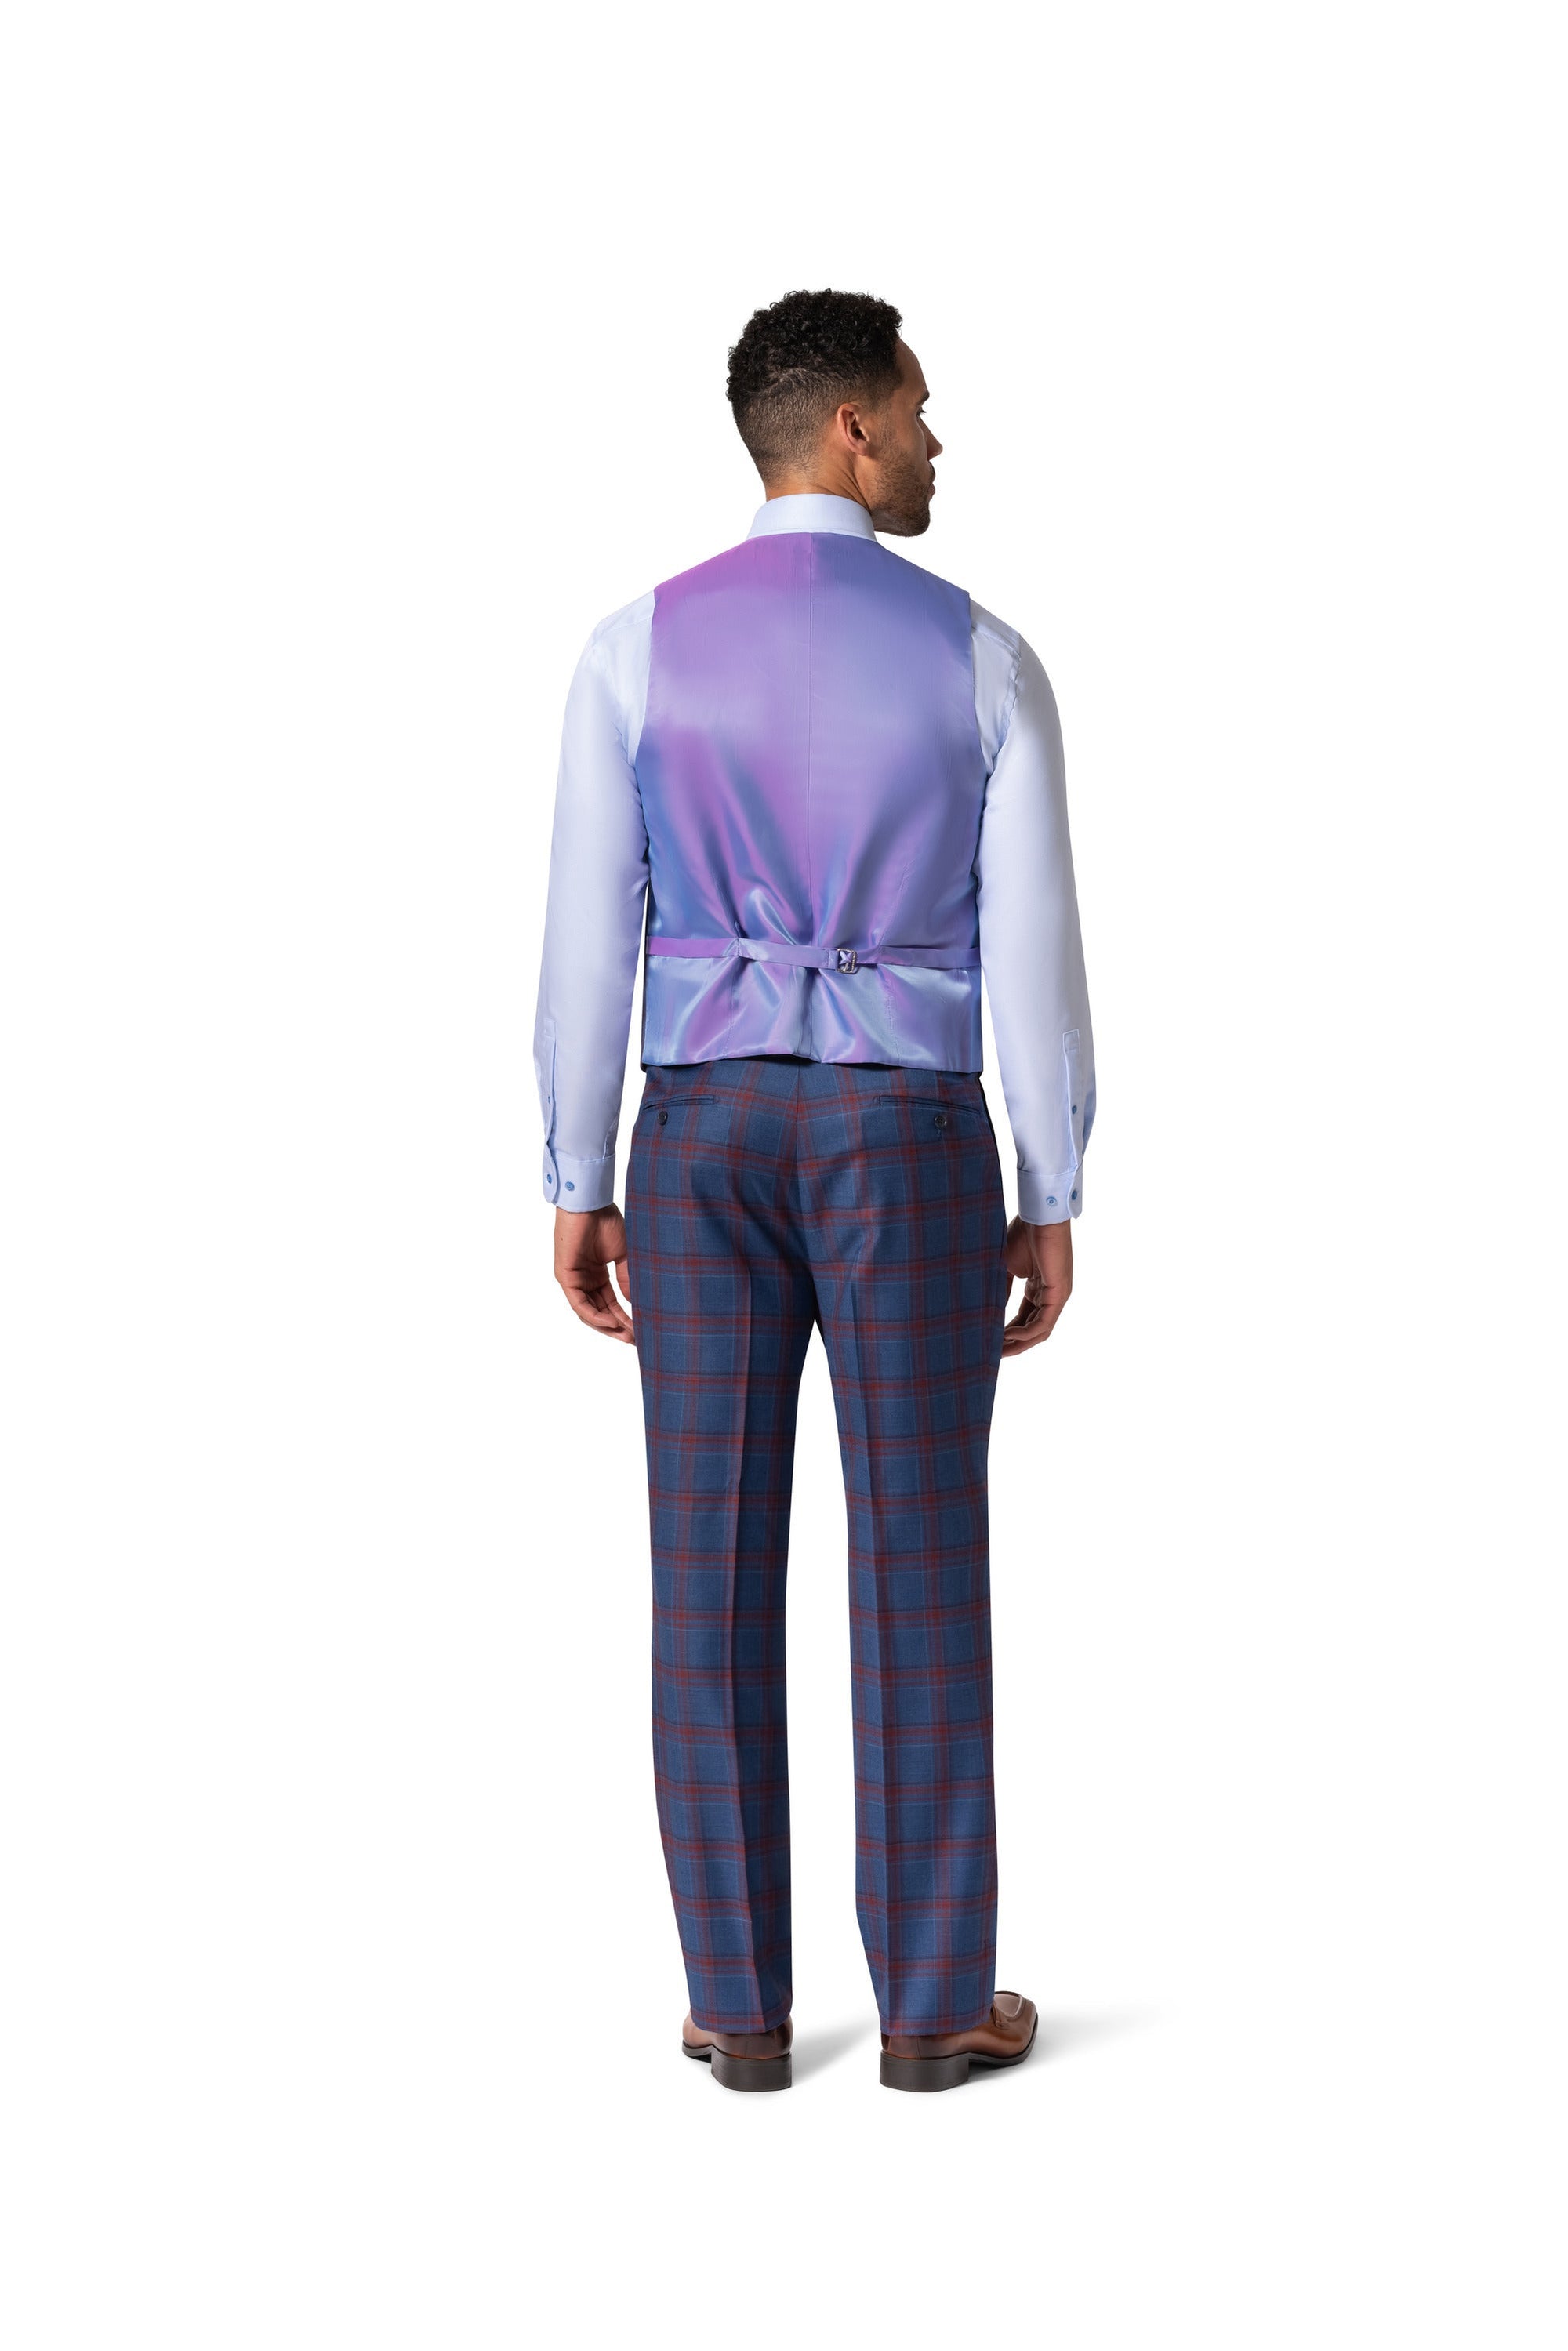 Berragamo Essex Elegant - Faille Wool Solid Suit 10005.4100 Big & Tall